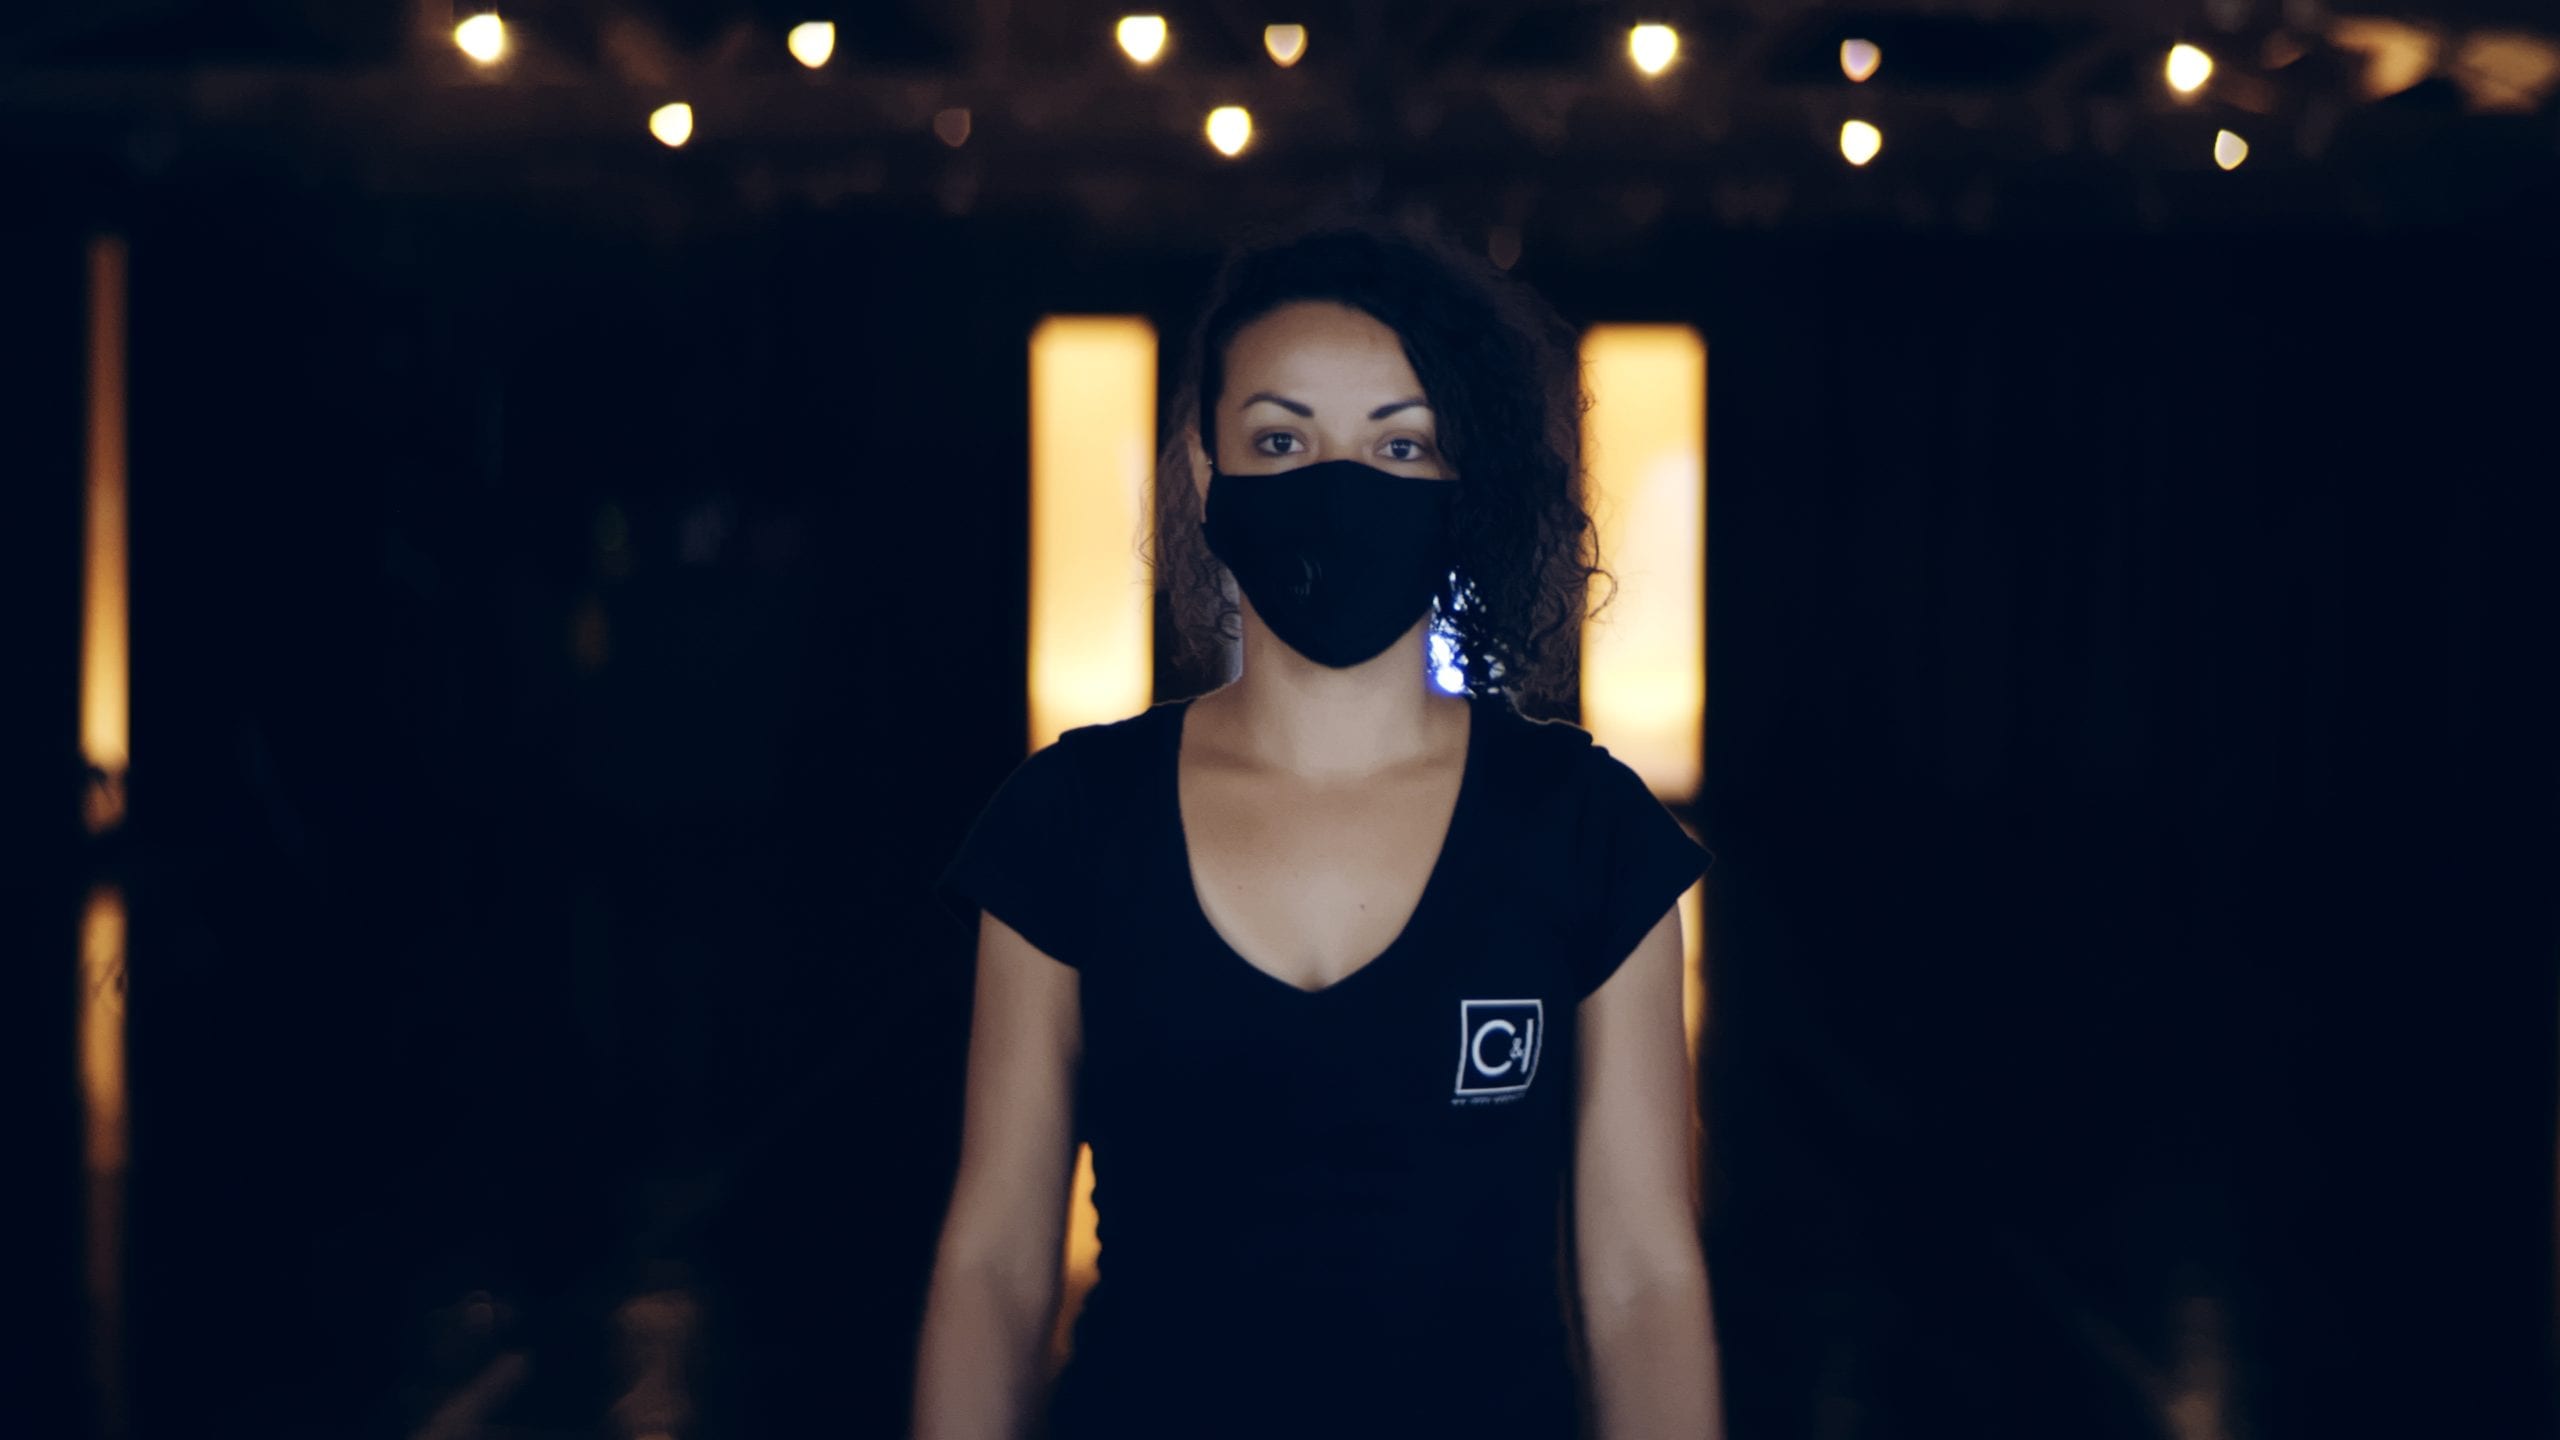 IU 76 Words Ciara Headshot of her wearing a black mask